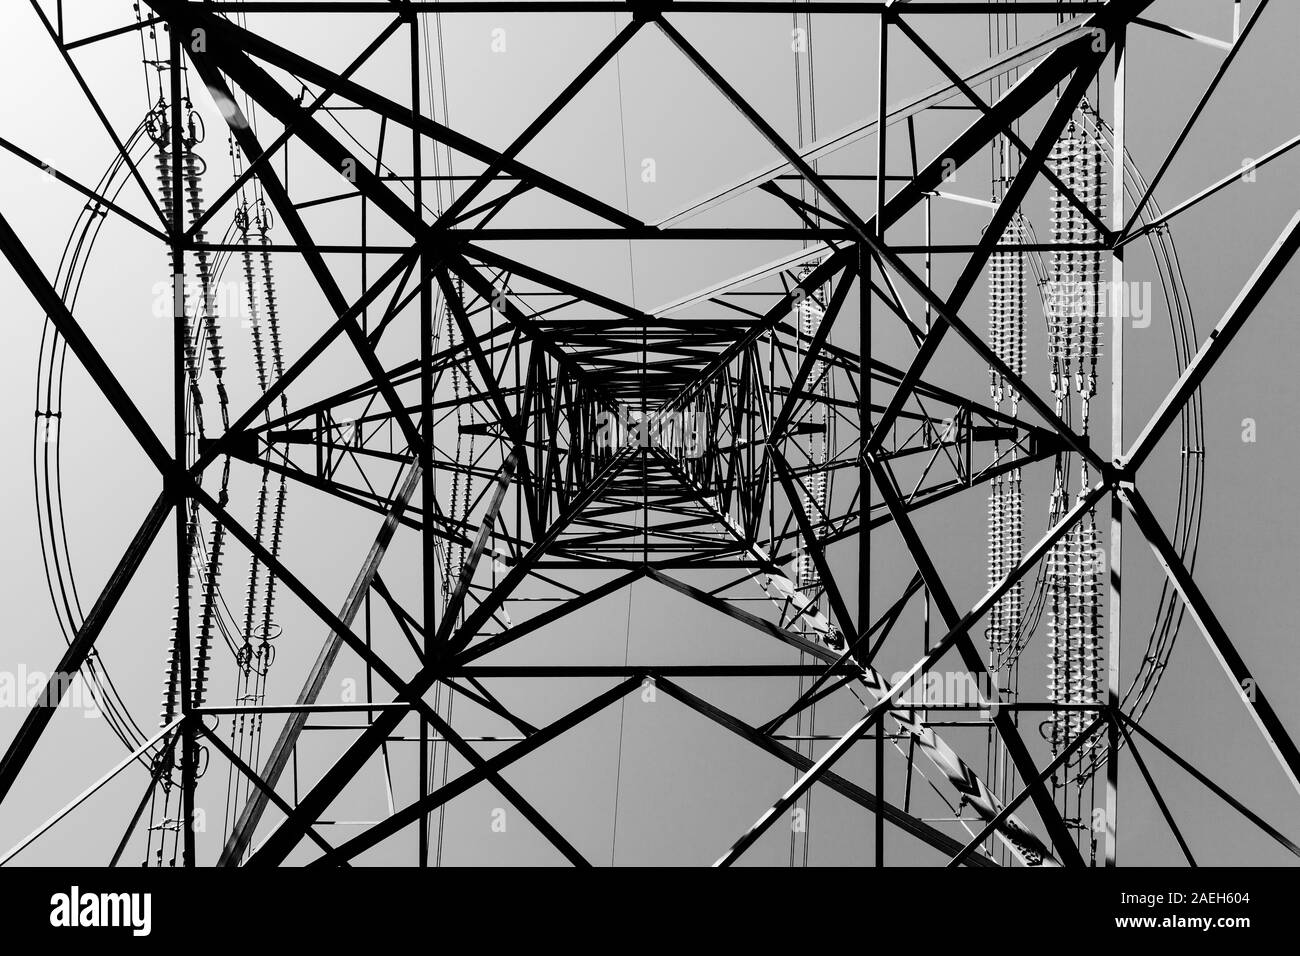 Photo en noir et blanc de pylônes et de câbles d'électricité silhouetté contre le ciel sans nuages avec des lignes directrices Banque D'Images